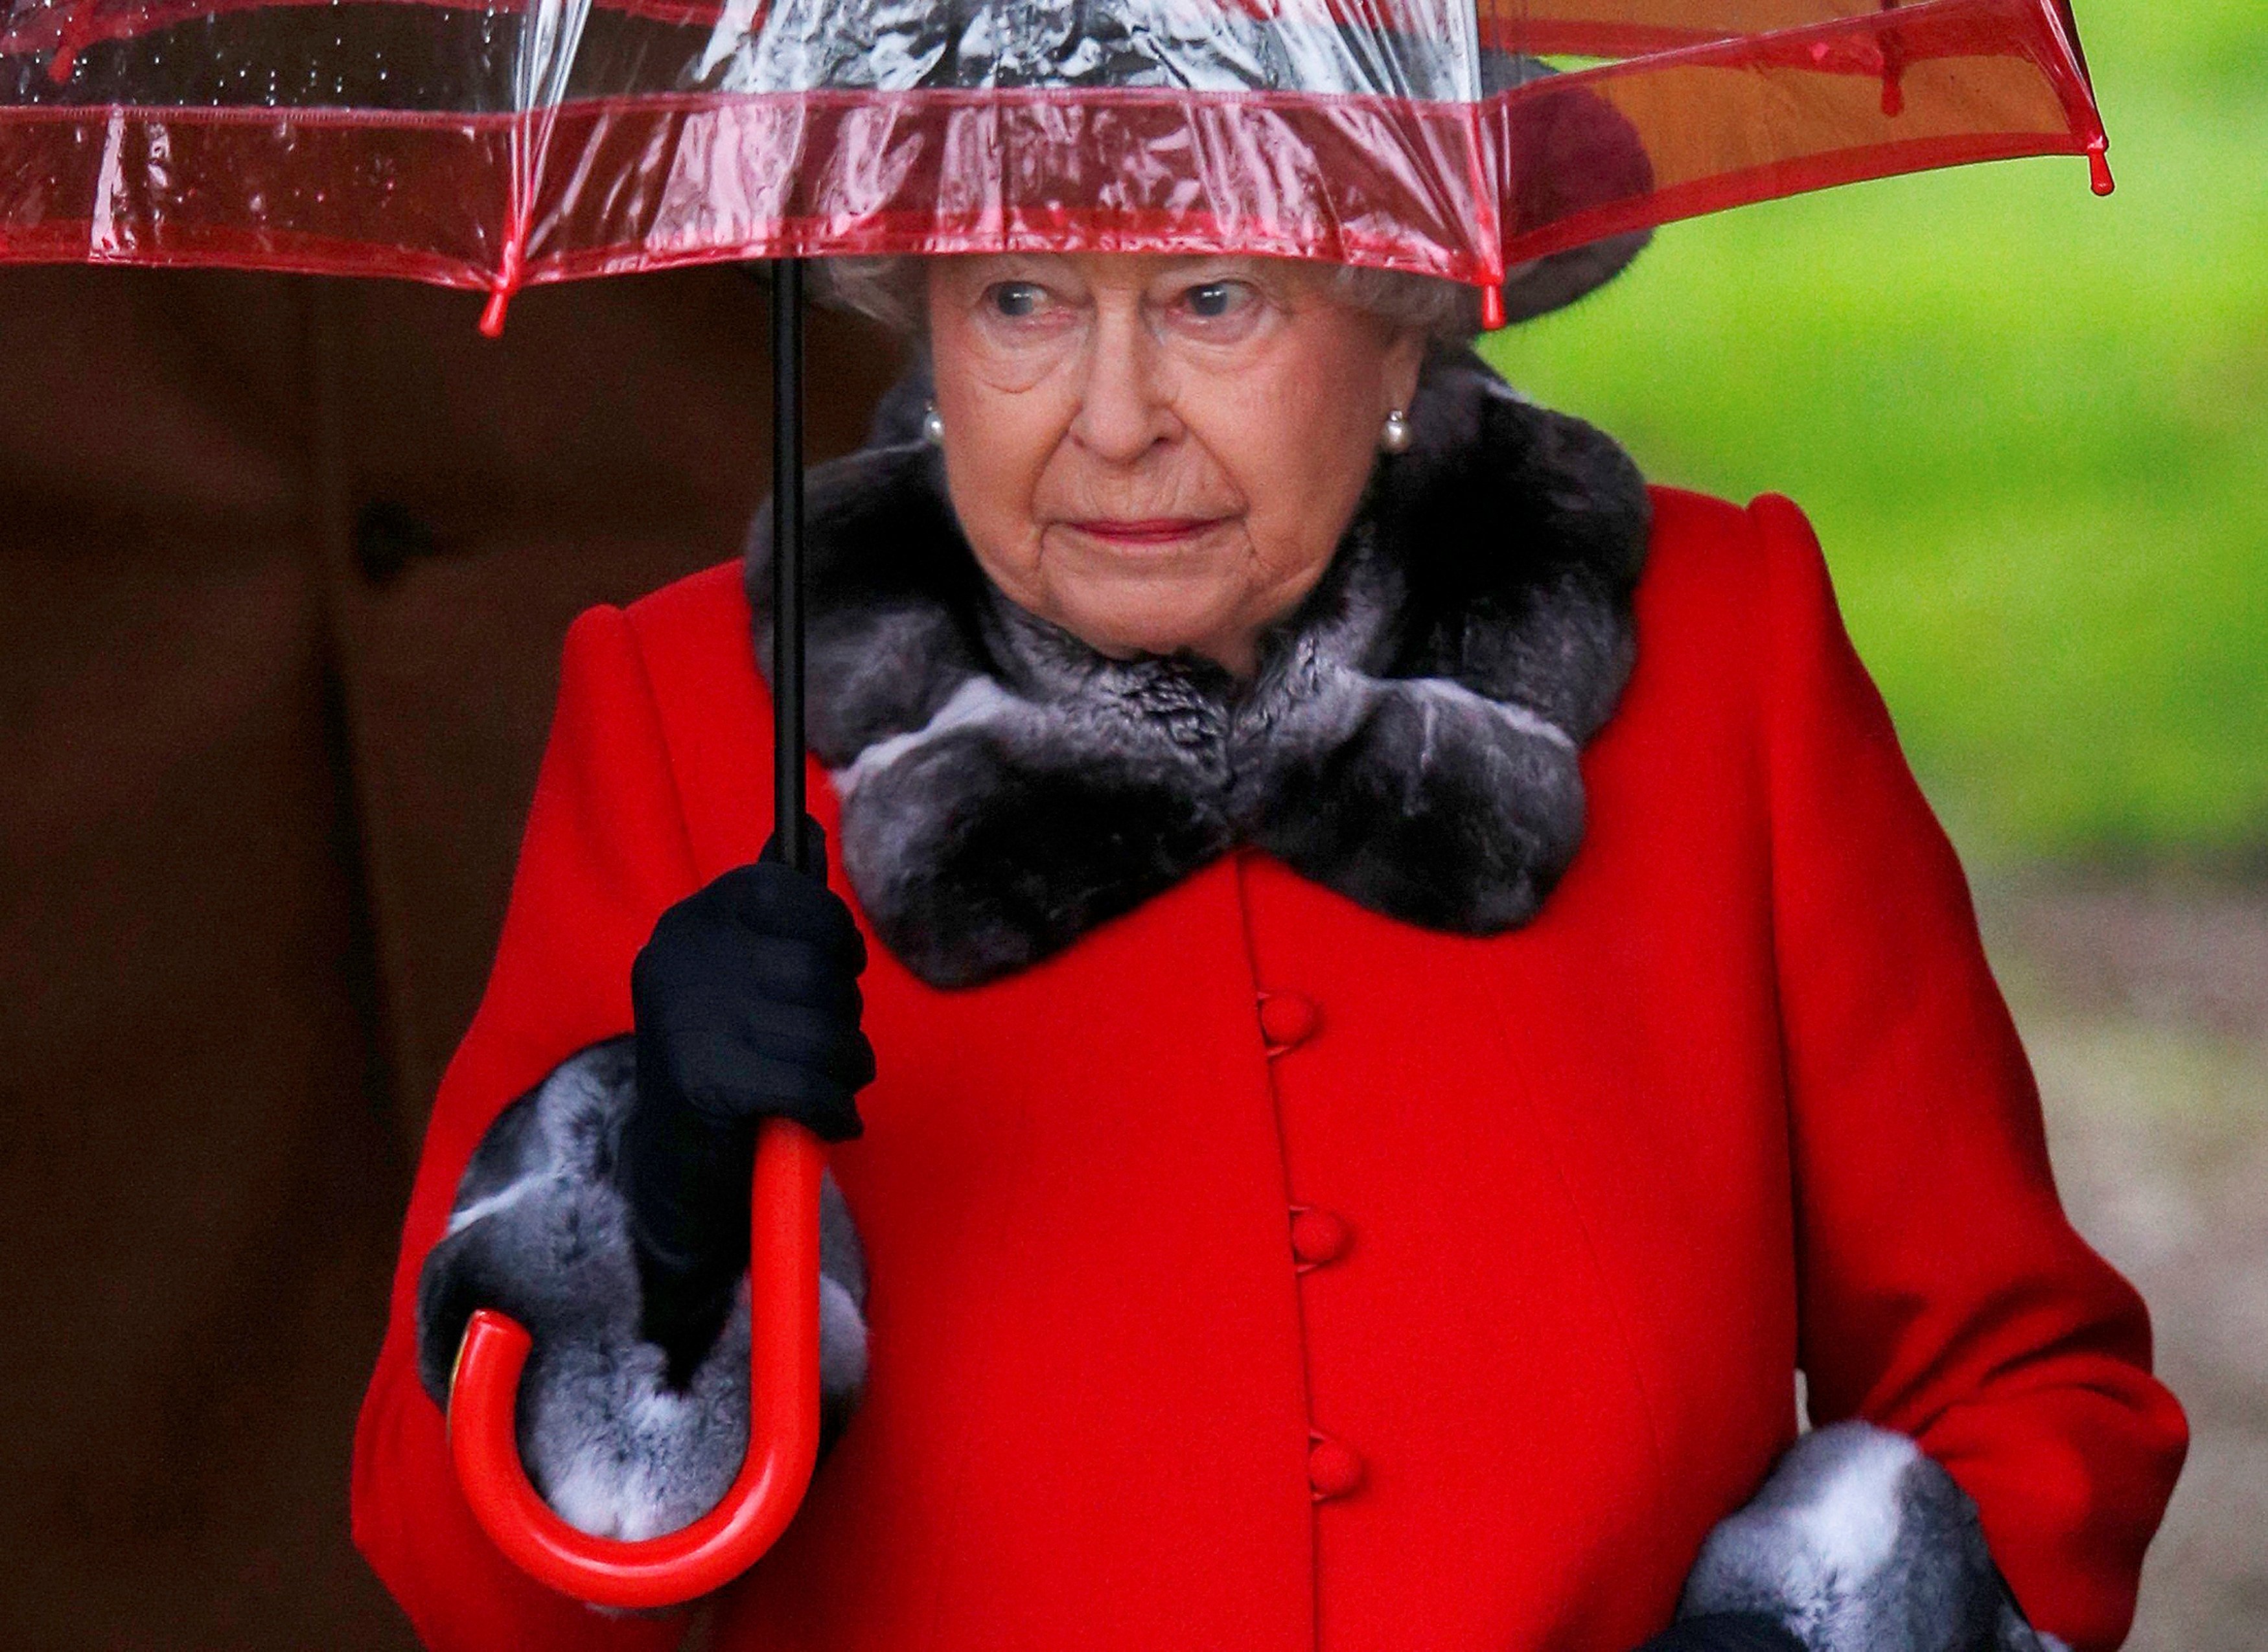 Reina Isabel II no asiste a tradicional misa de Navidad por resfriado